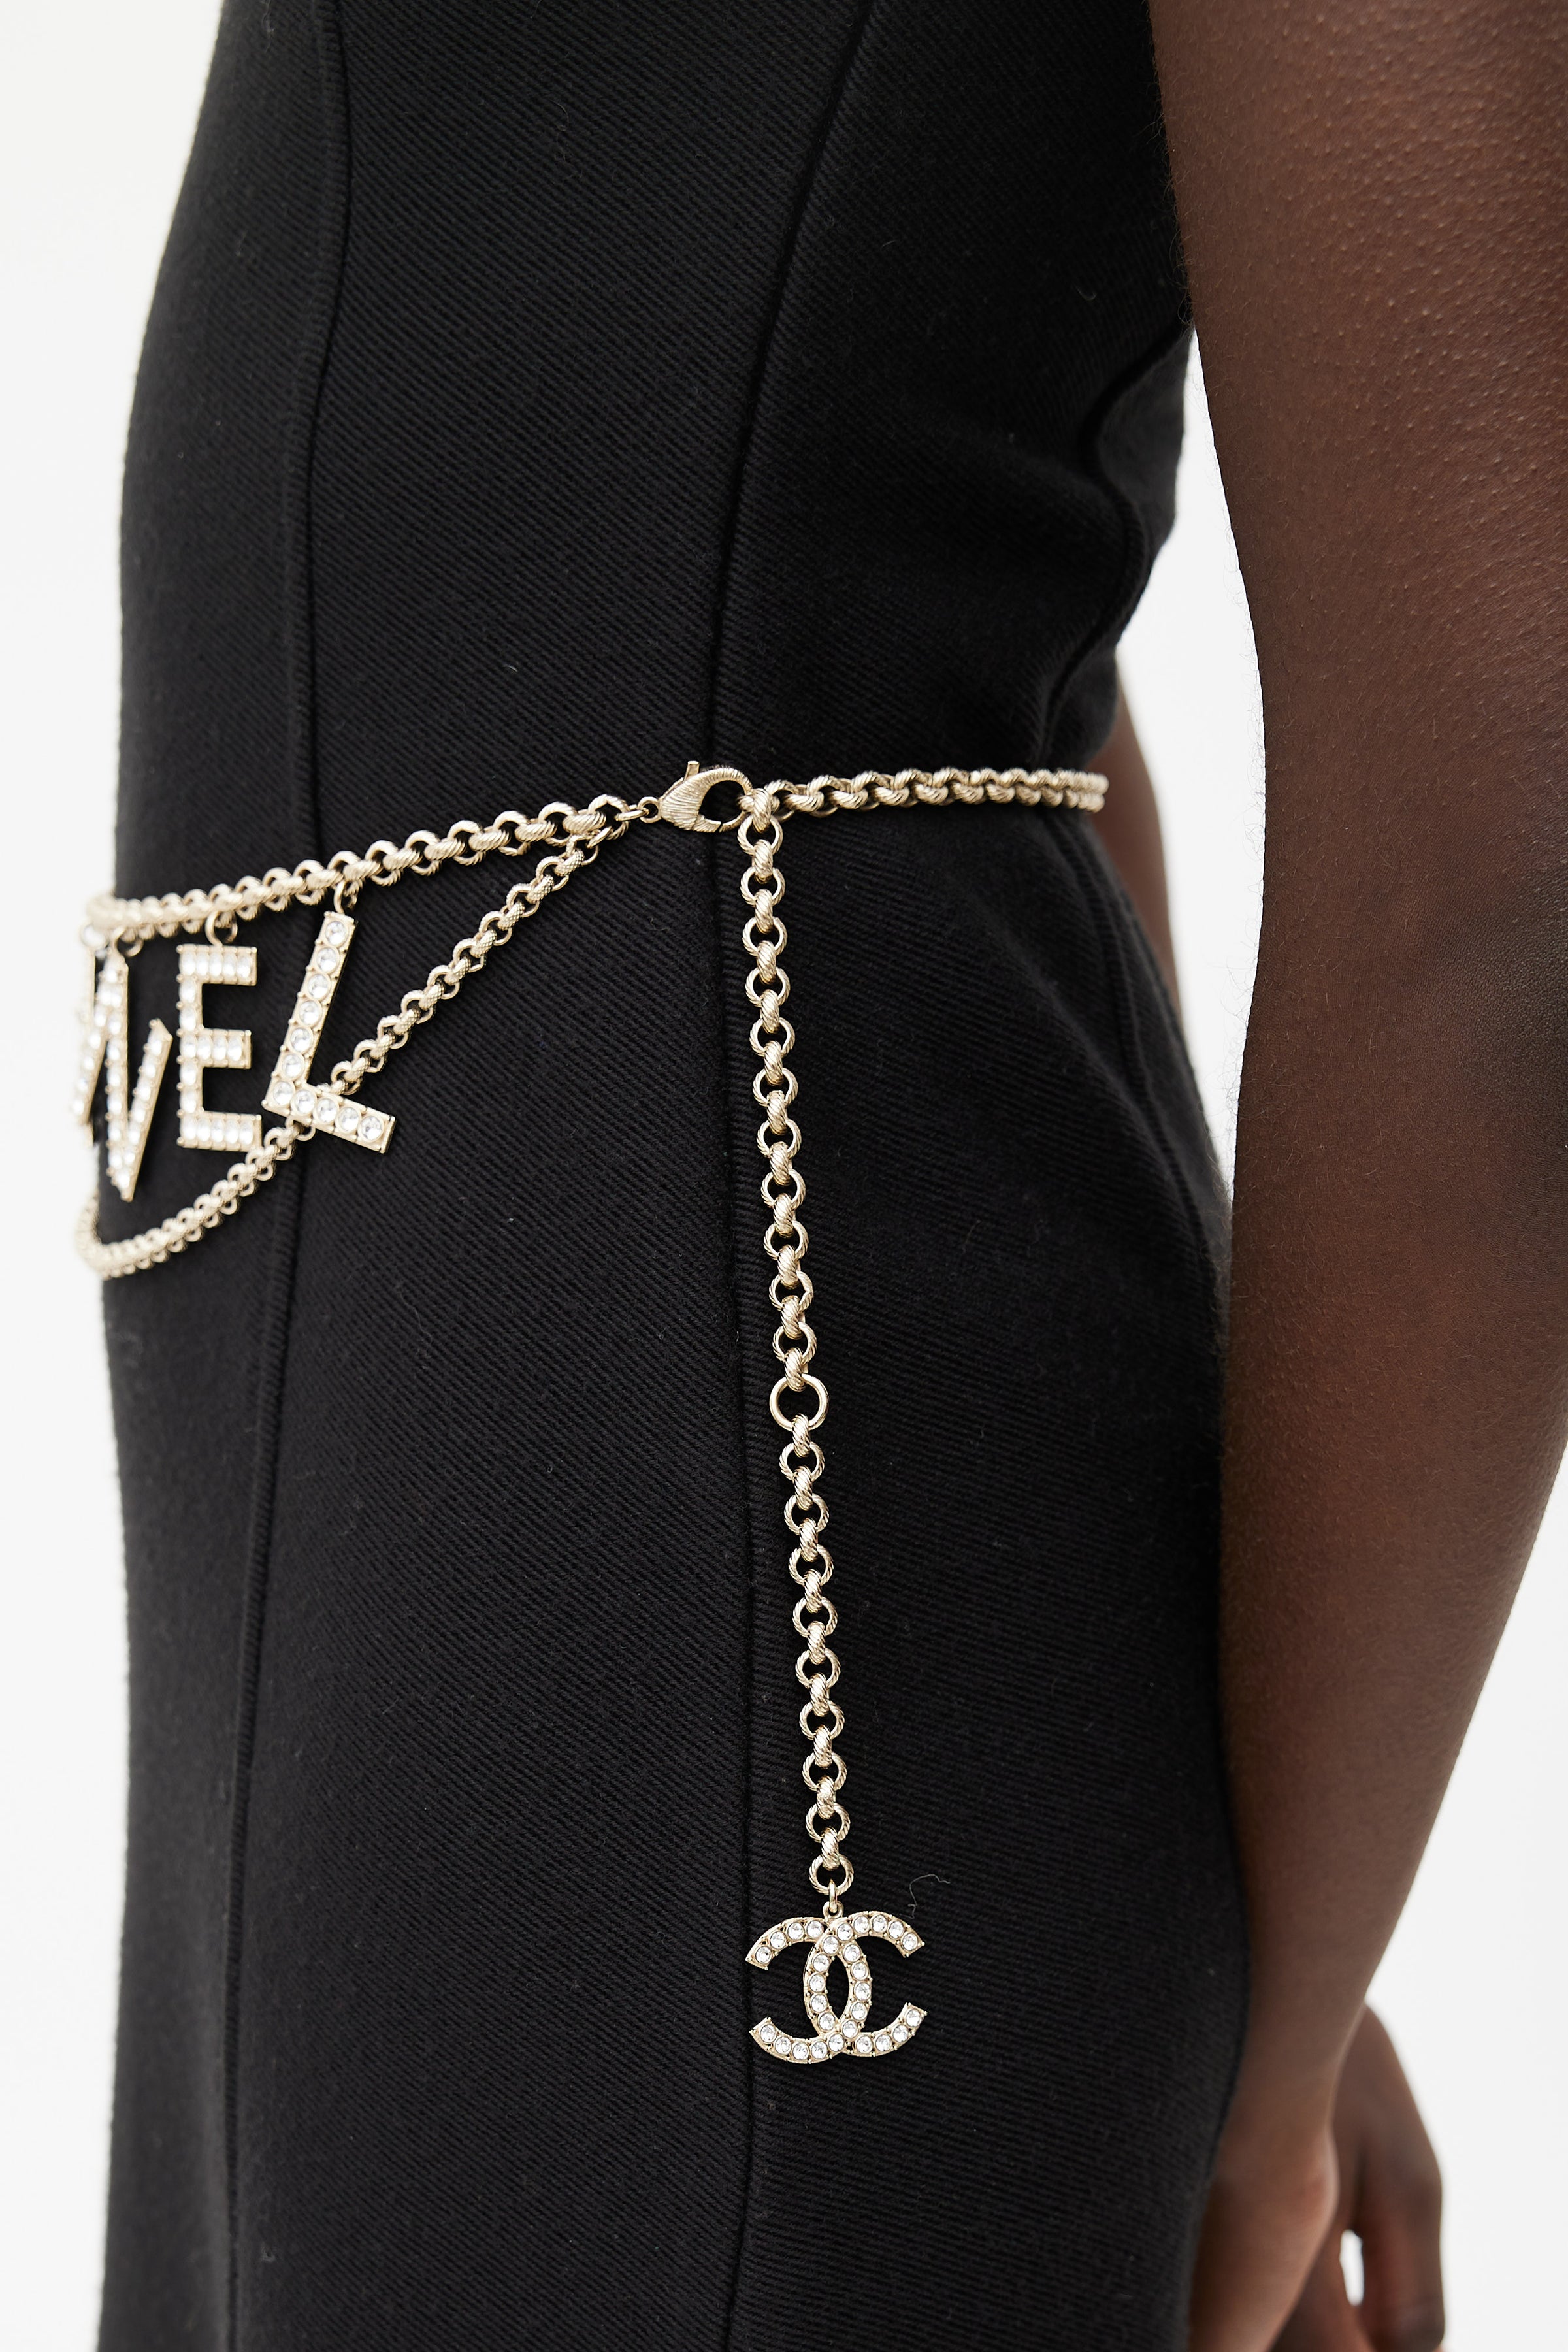 Chanel cc logo crystal belt or necklace – LLBazar